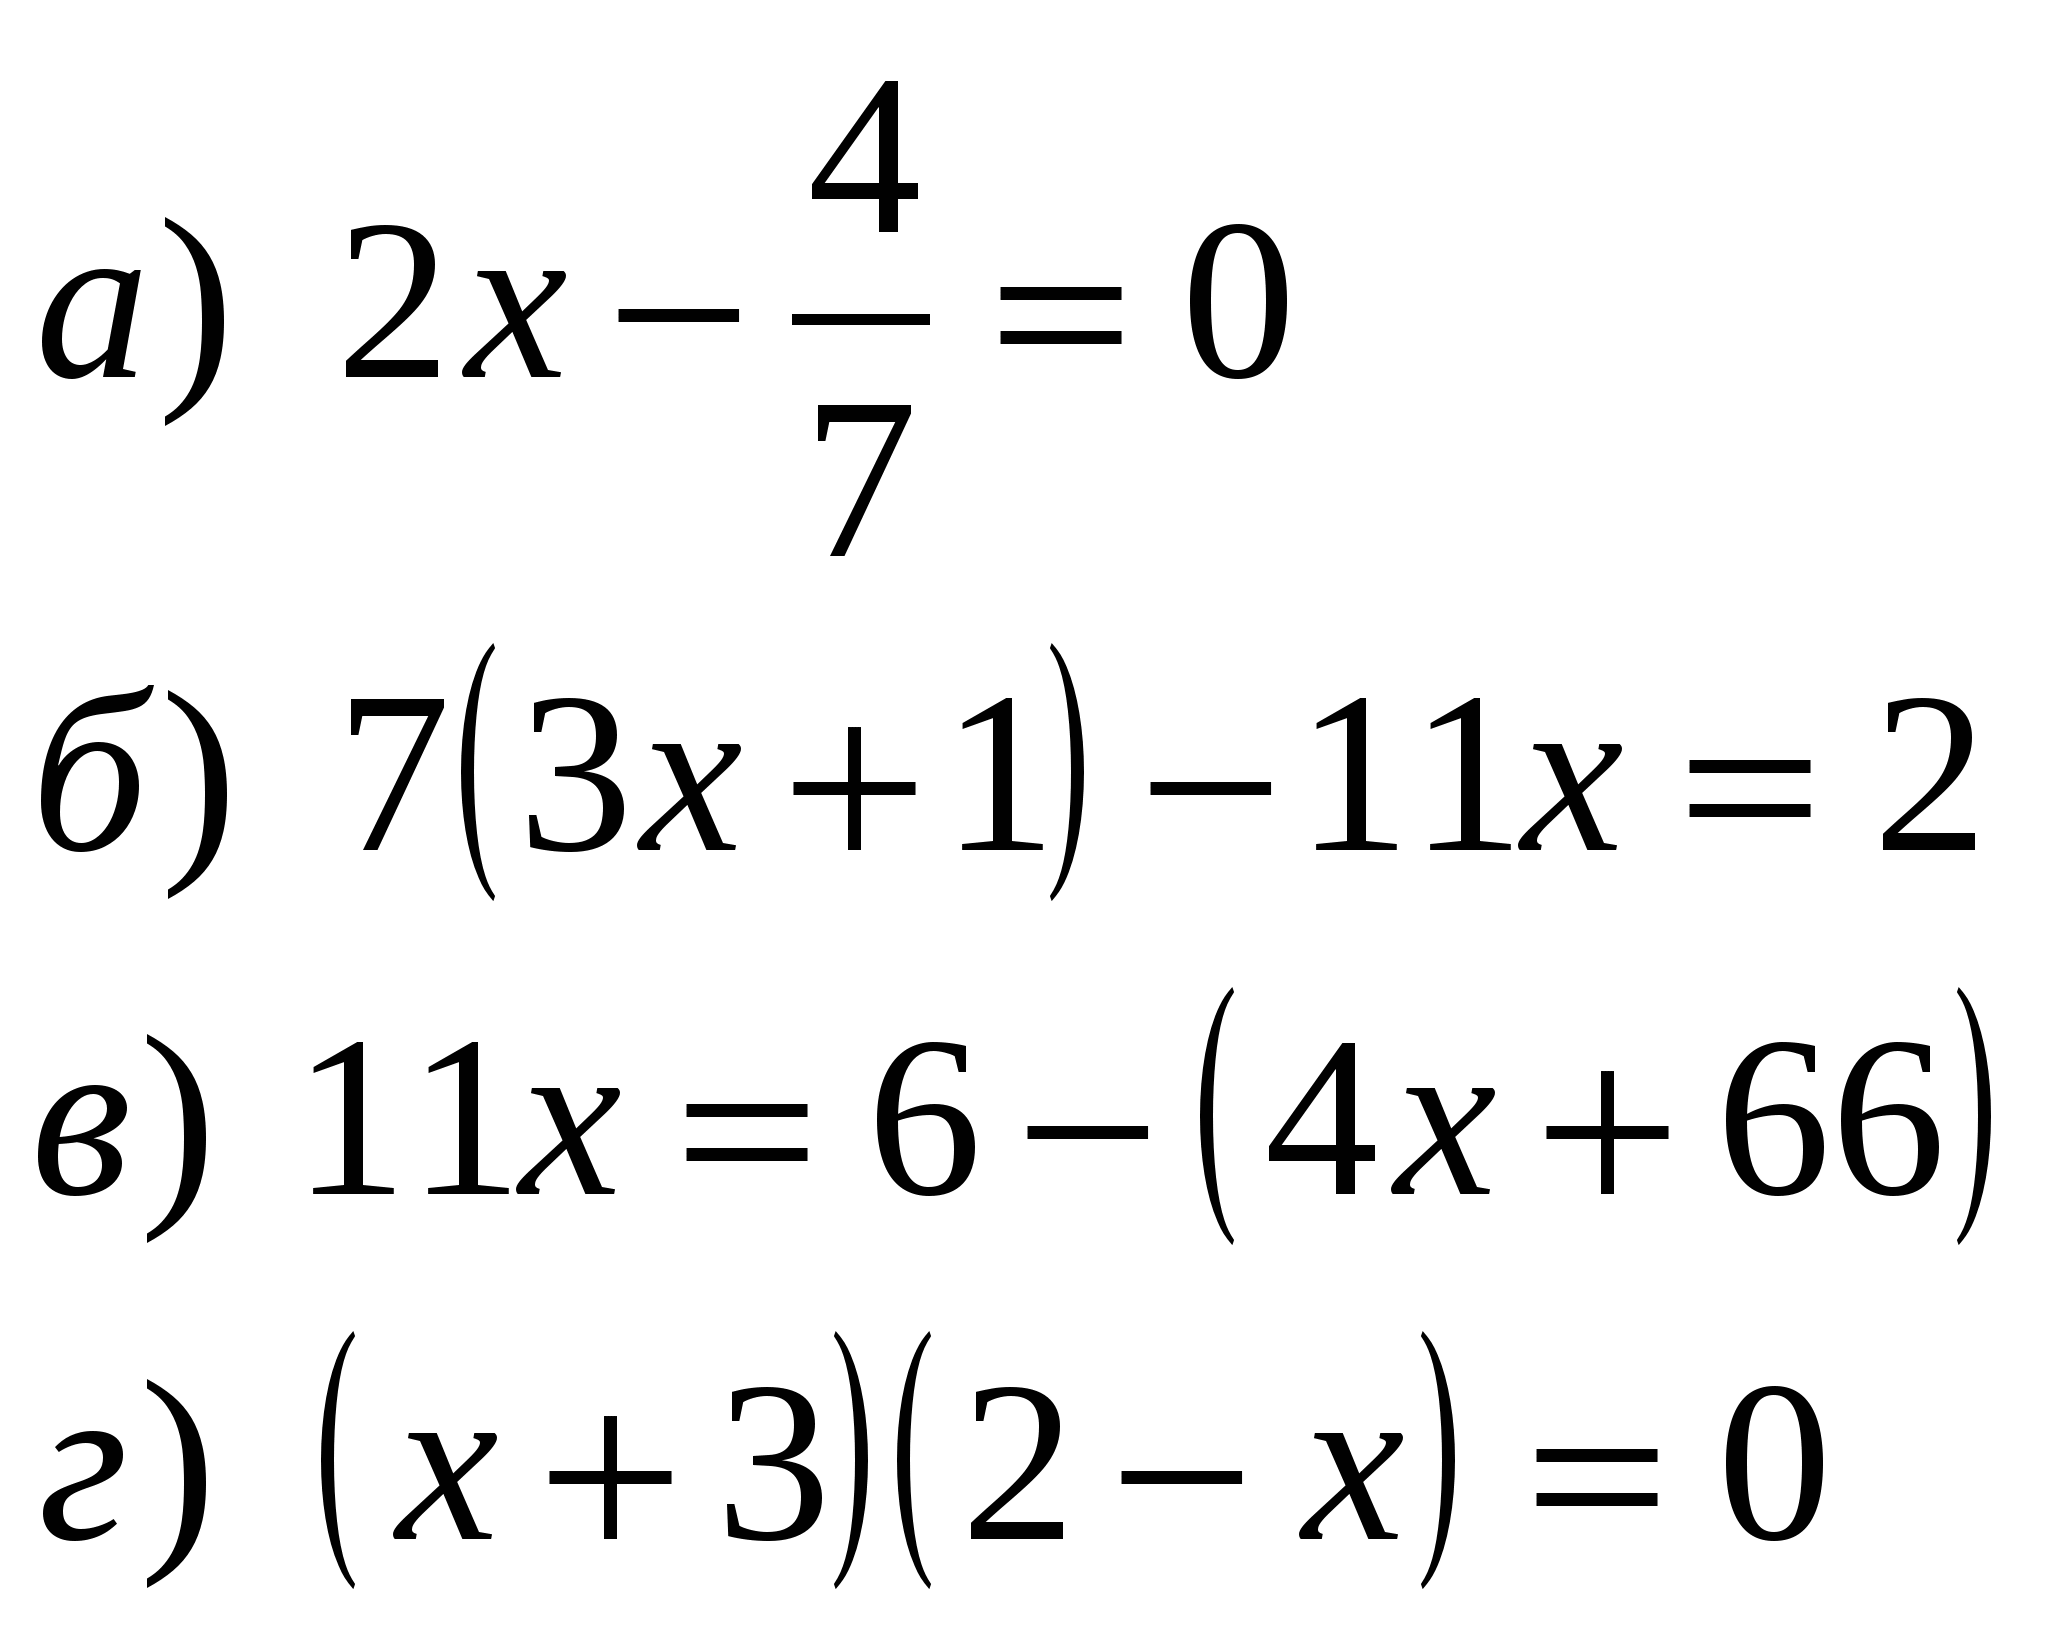 Задания для подготовки к контрольной работе по алгебре 7 класса «Уравнение с одной переменной»